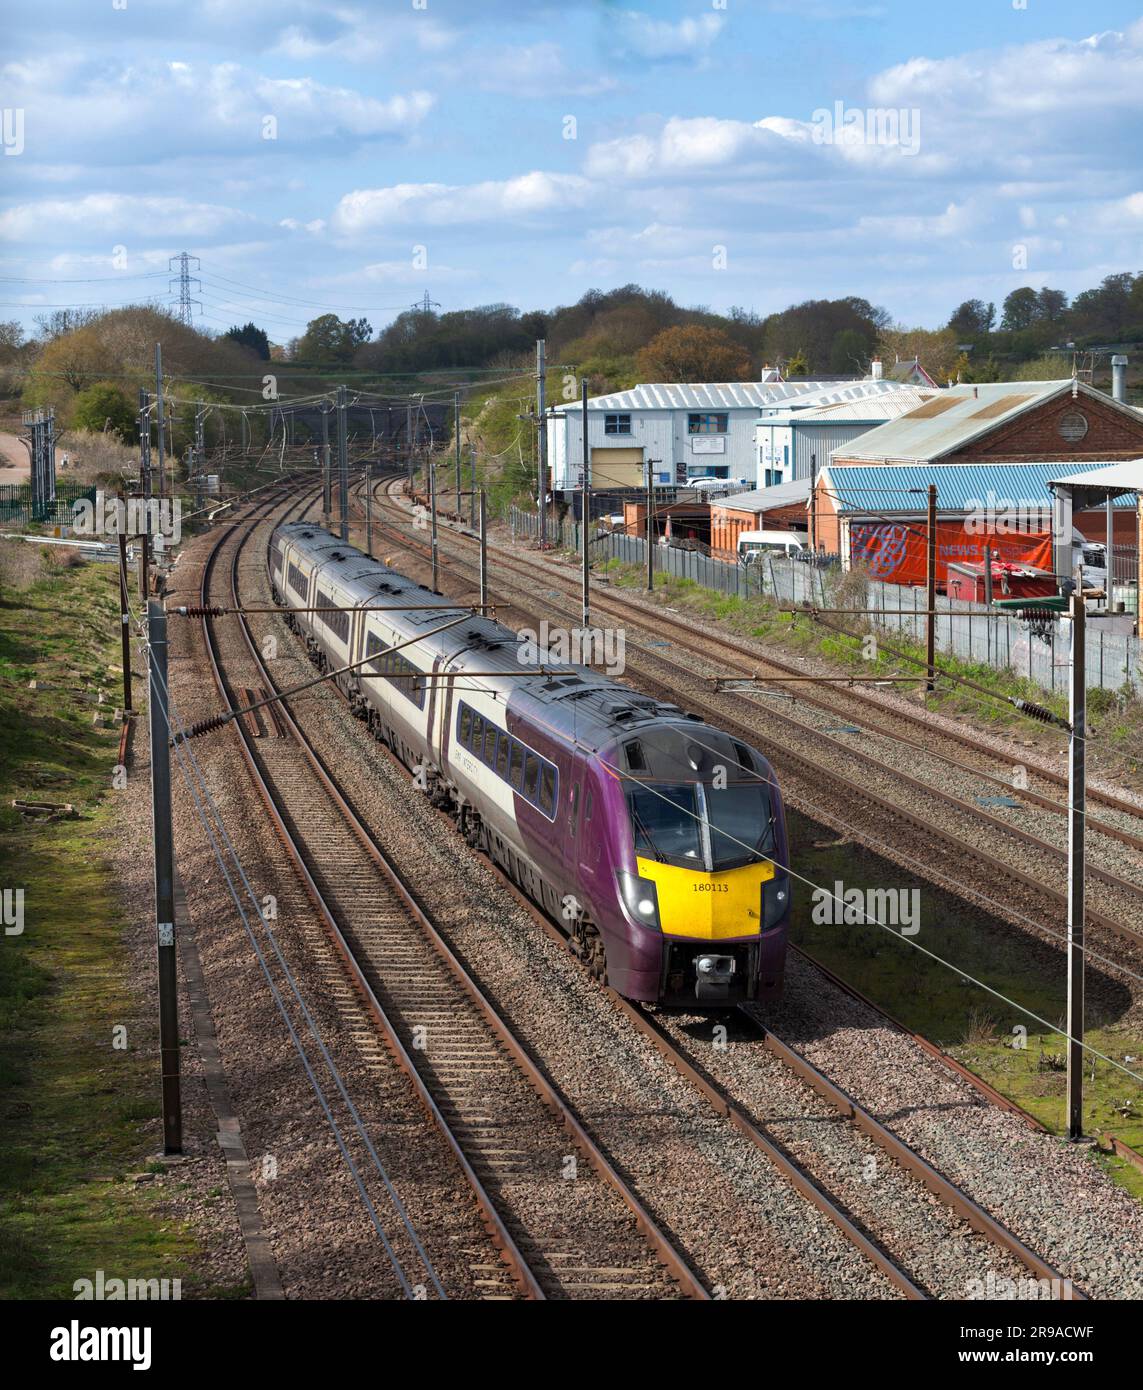 Train diesel de classe 180 de East Midlands sur la ligne principale électrifiée de Midland à 4 voies passant par Ampthill, Bedfordshire Banque D'Images